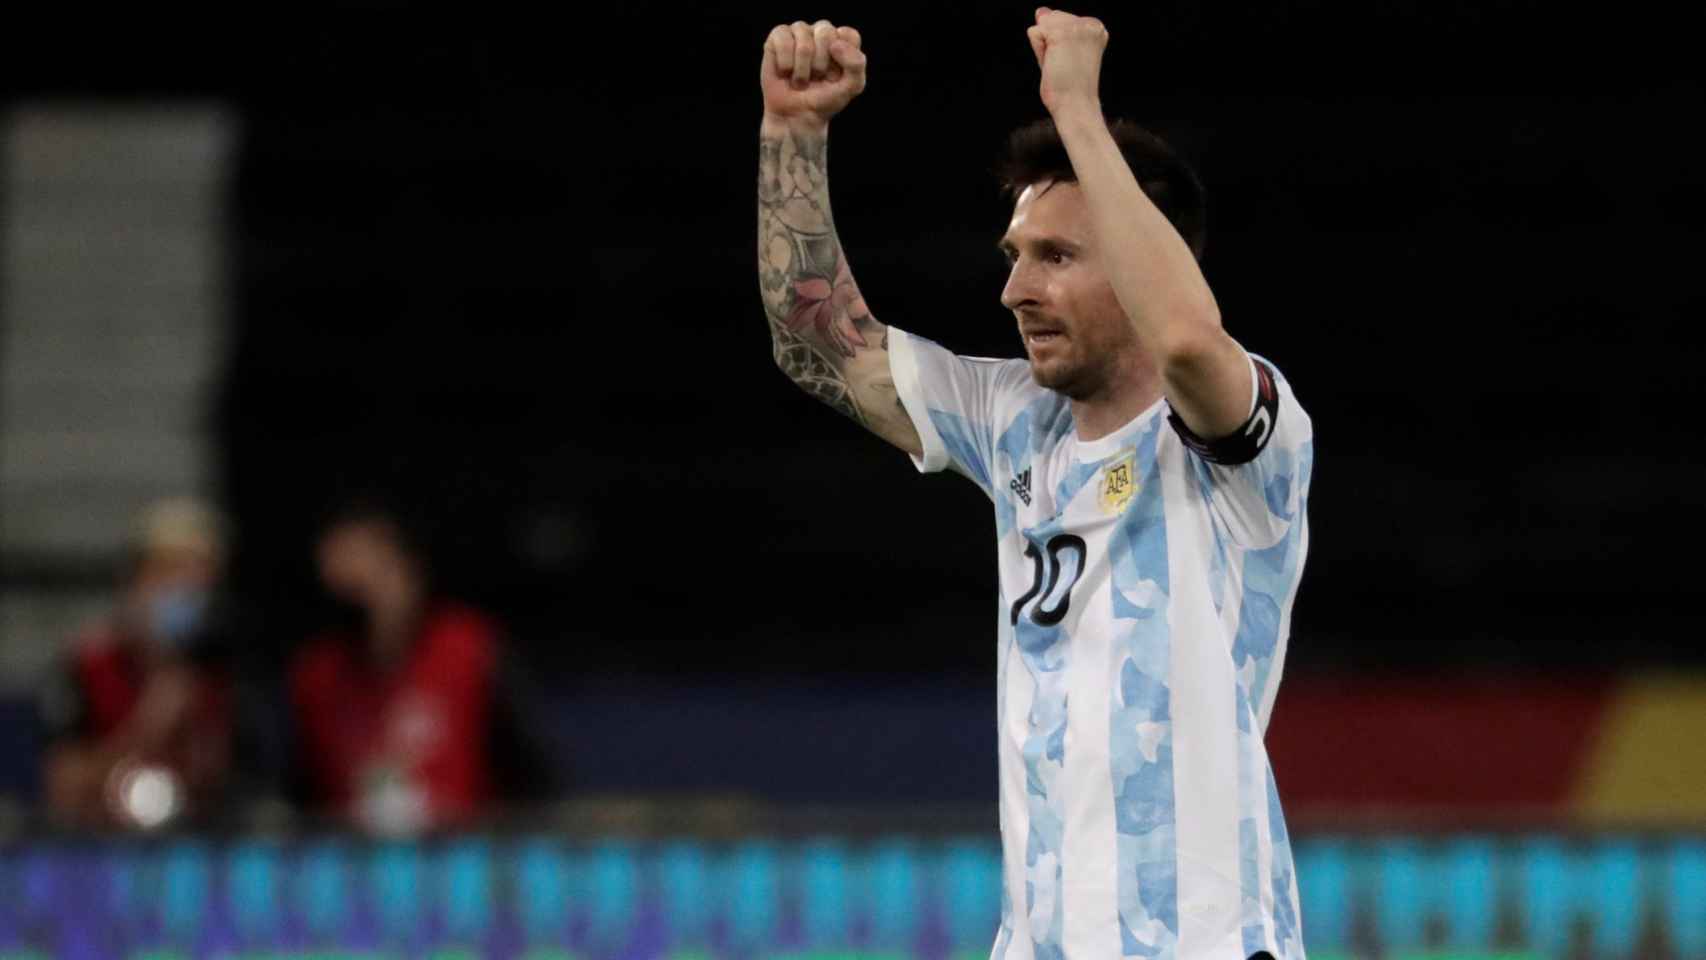 Messi celebrando su gol contra Chile / EFE